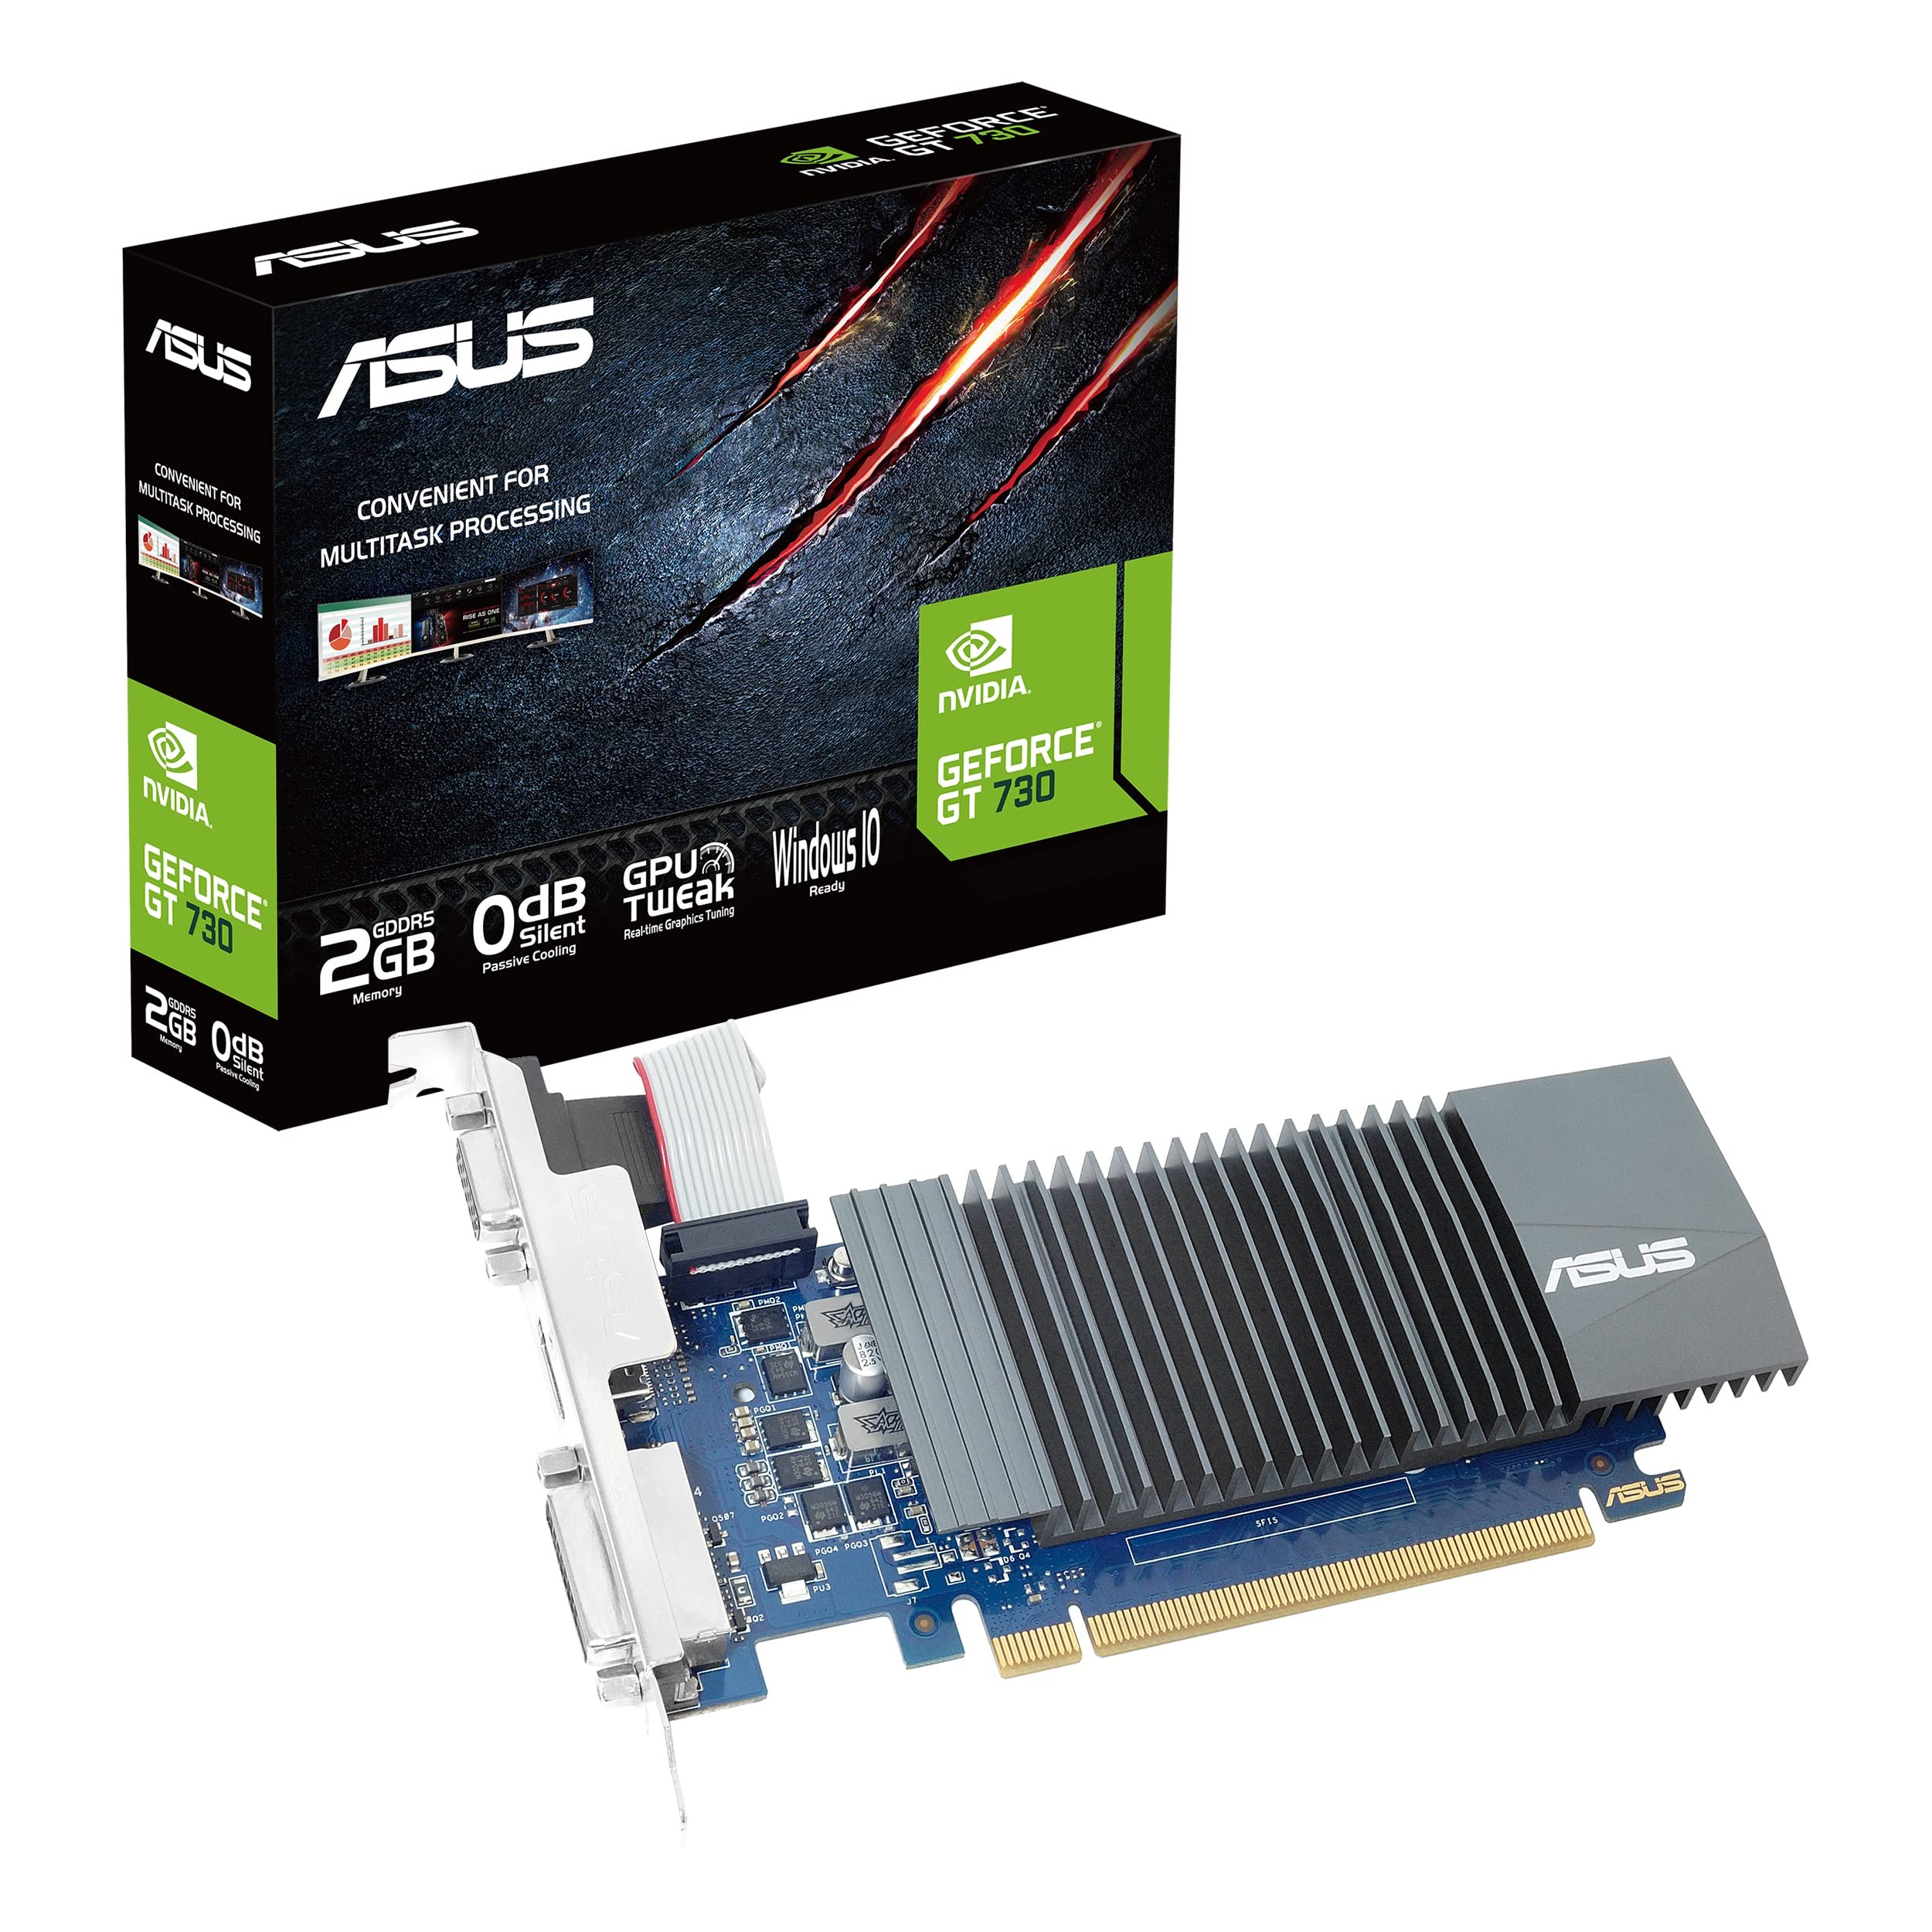 ASUSTEK - ビデオカード NVIDIA GF GT730 64ビット 2GB GDDR5 PCIE 2.0 90YV07G4-M0NA00